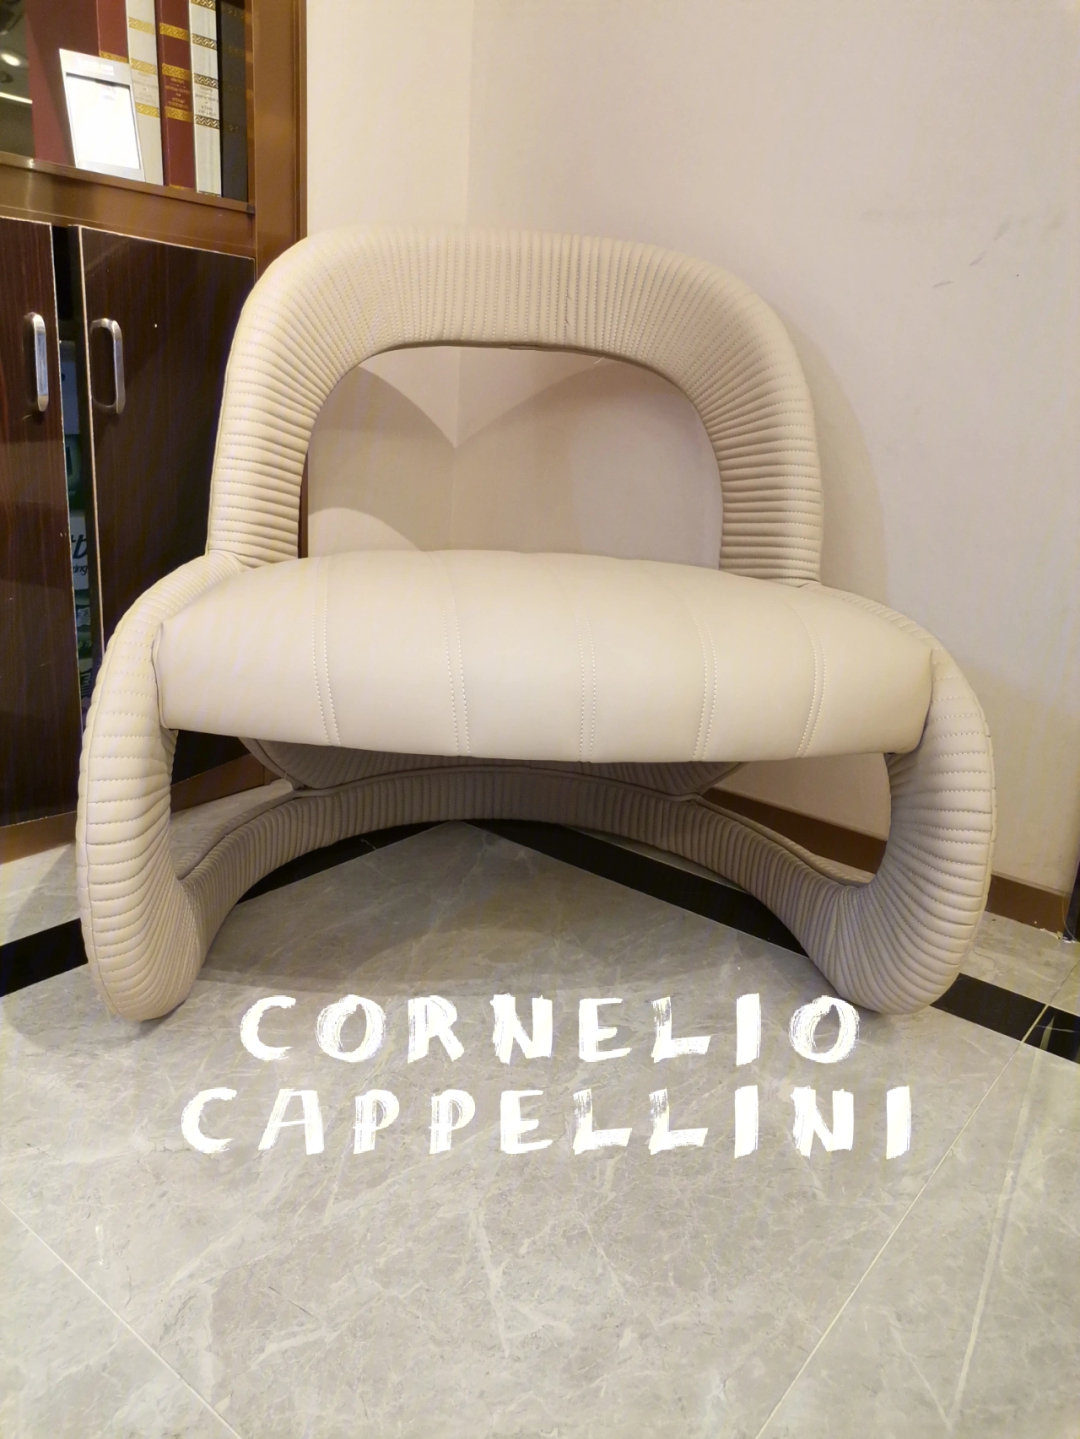 corneliocappellini意式轻奢经典蝴蝶椅